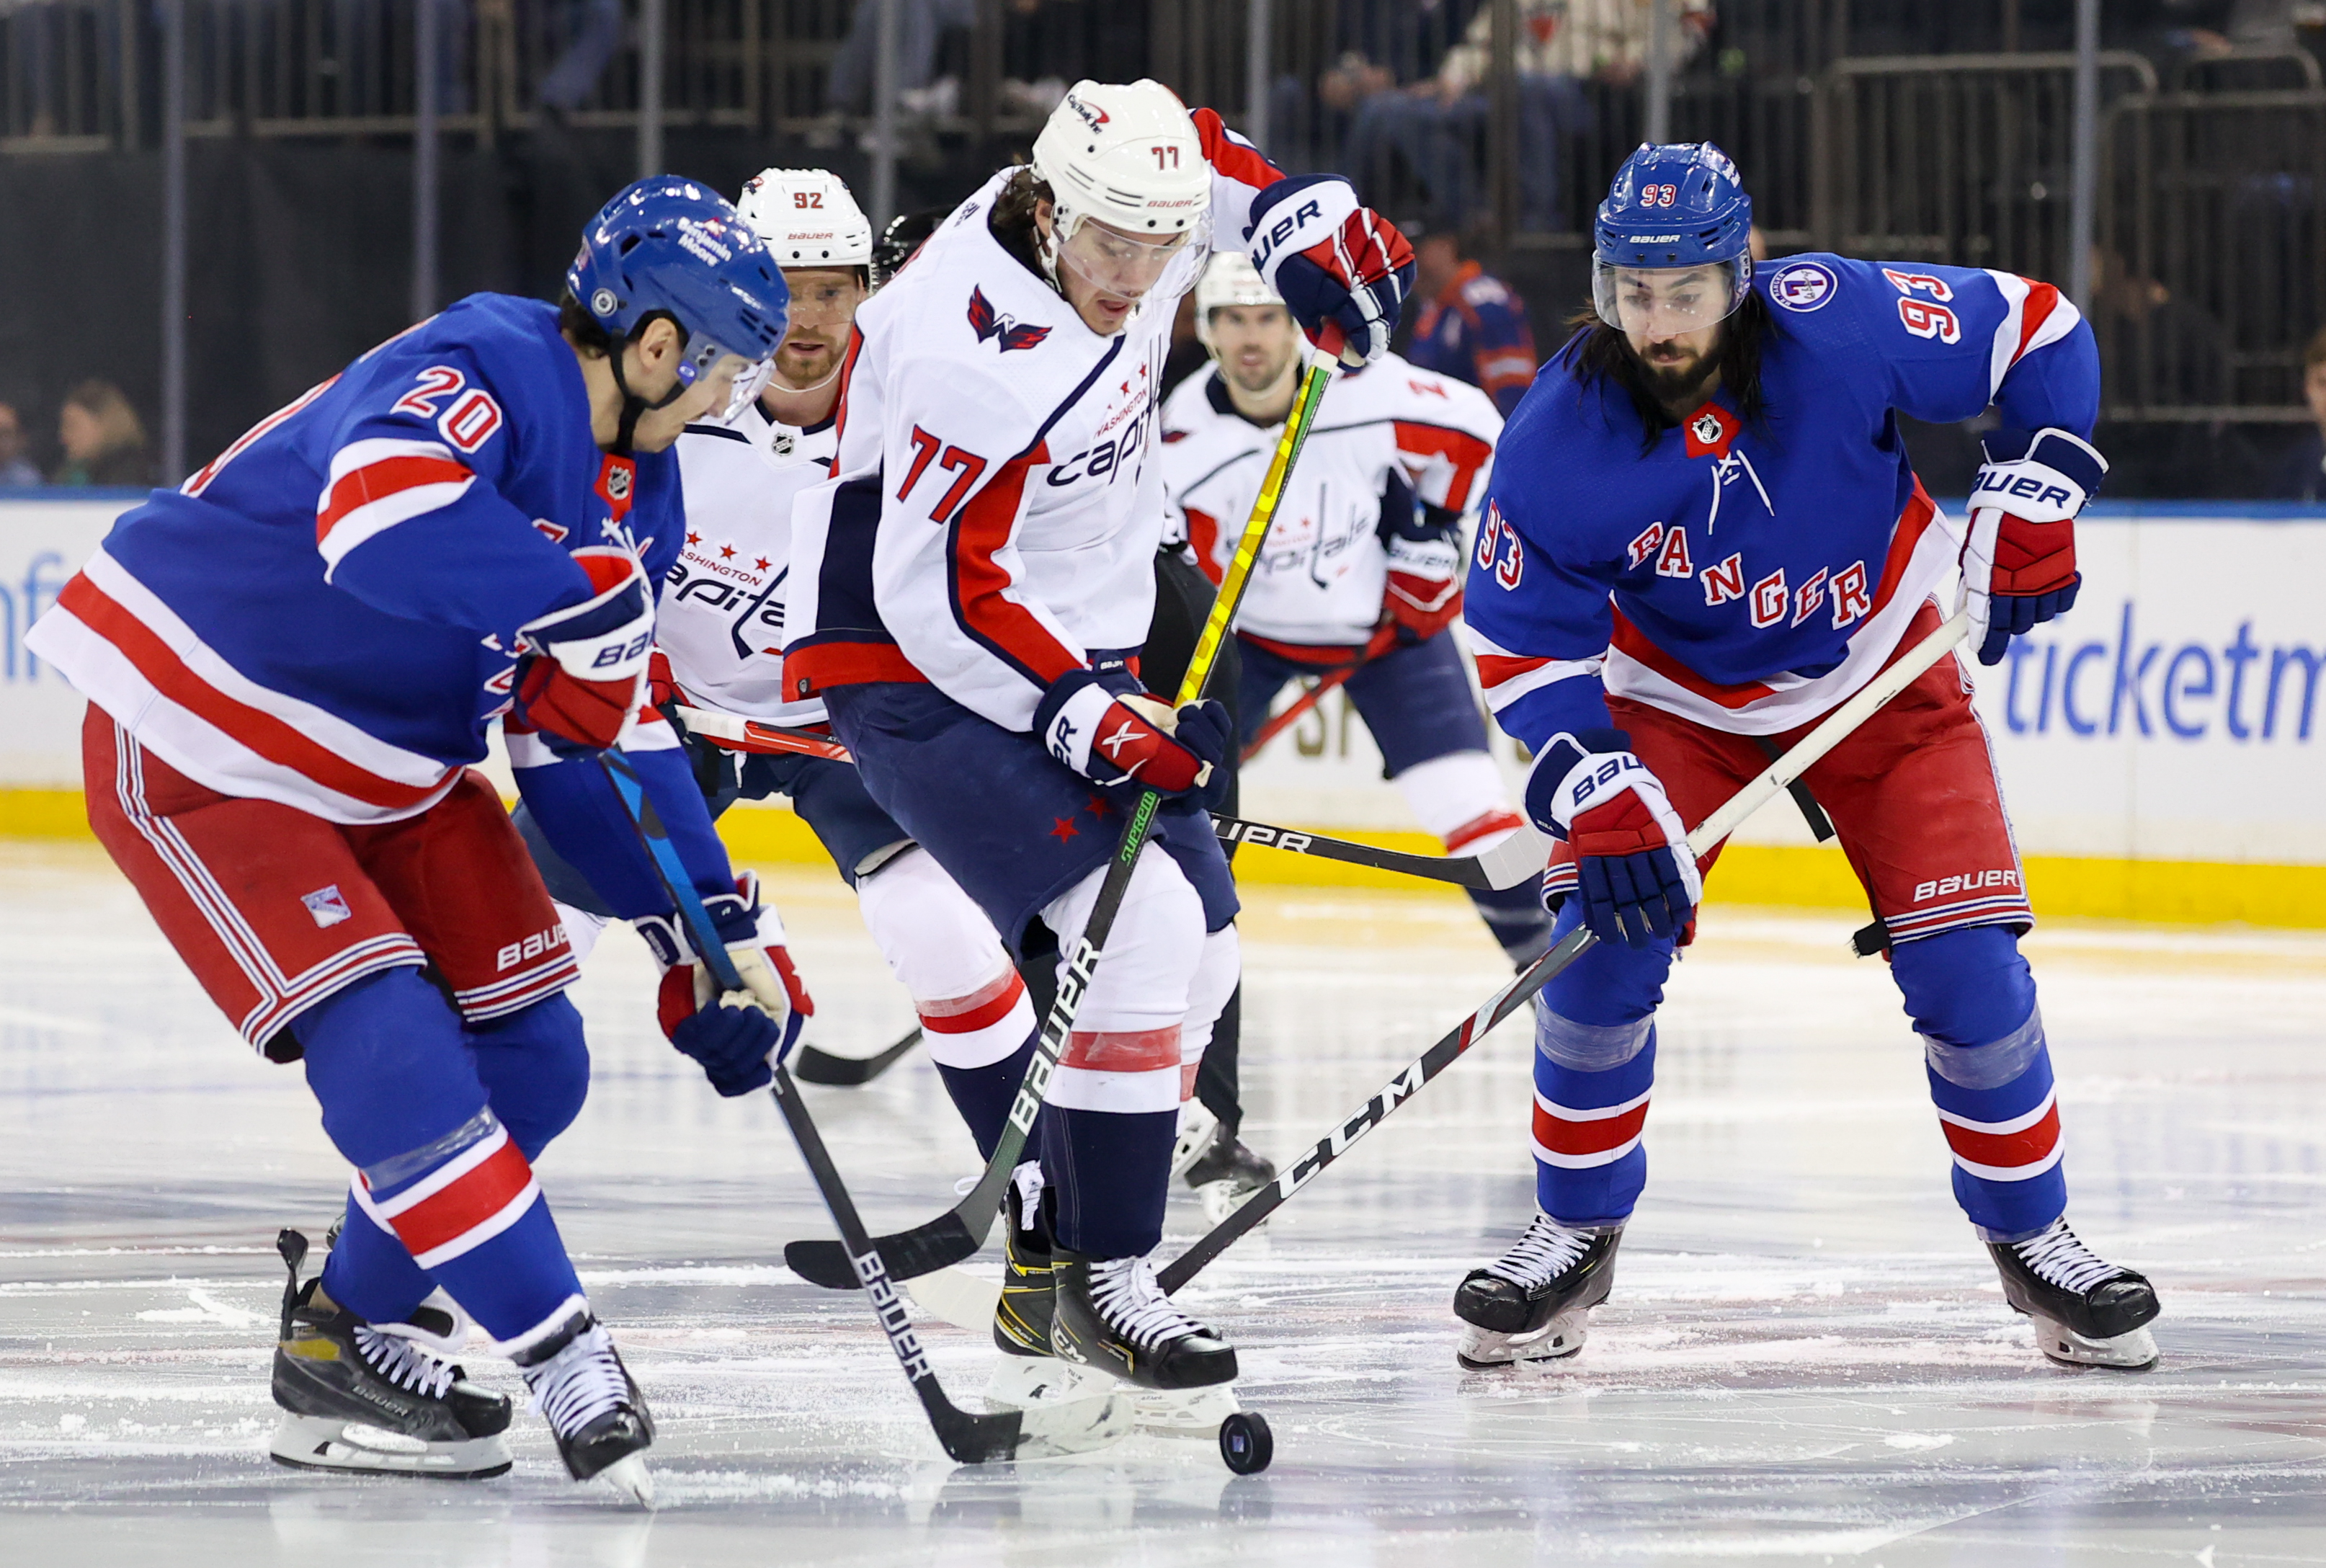 NHL: APR 29 Capitals at Rangers